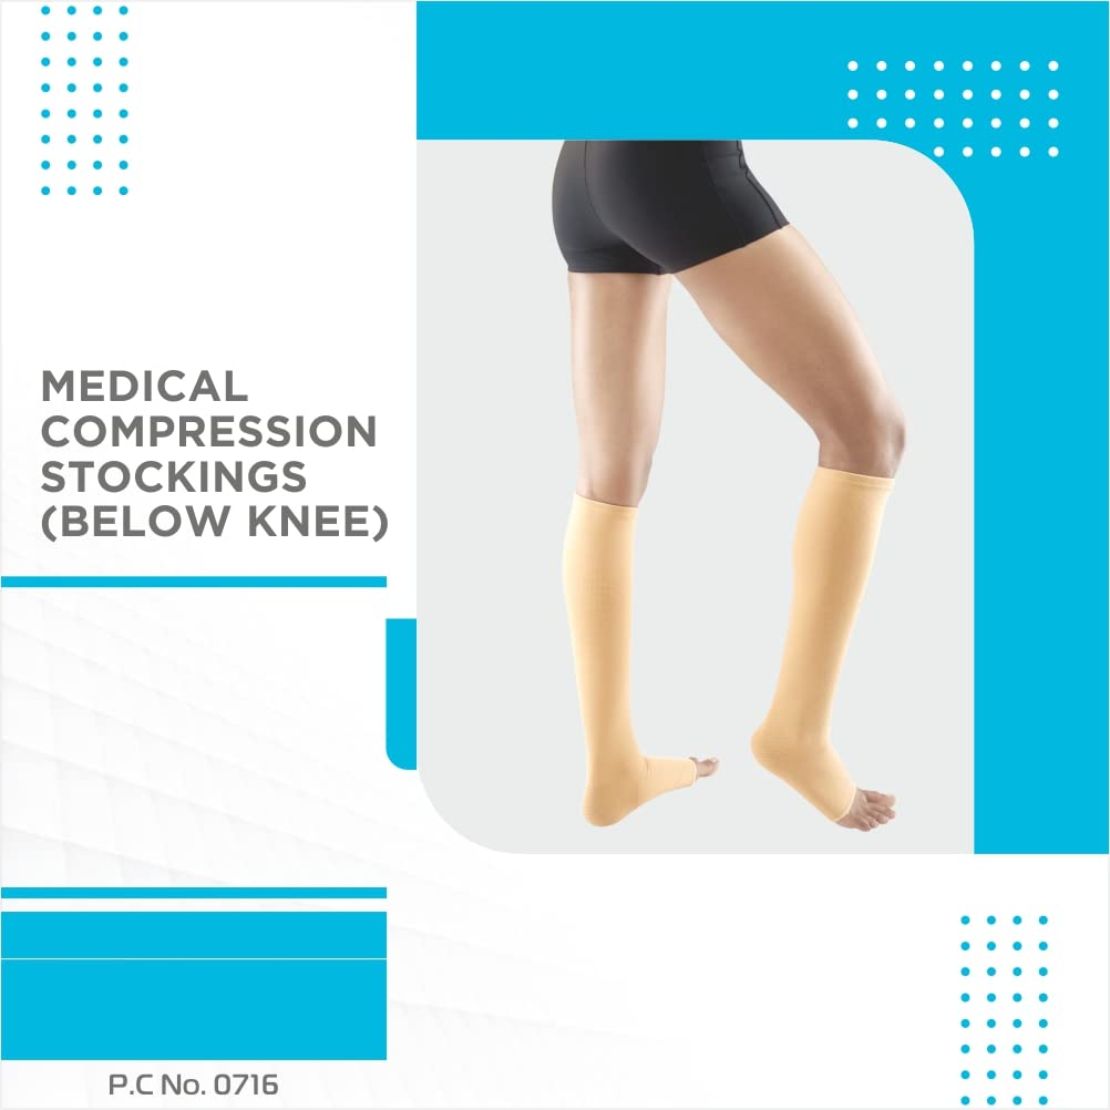 Buy Vissco Medical Compression Stockings (Below Knee) for best